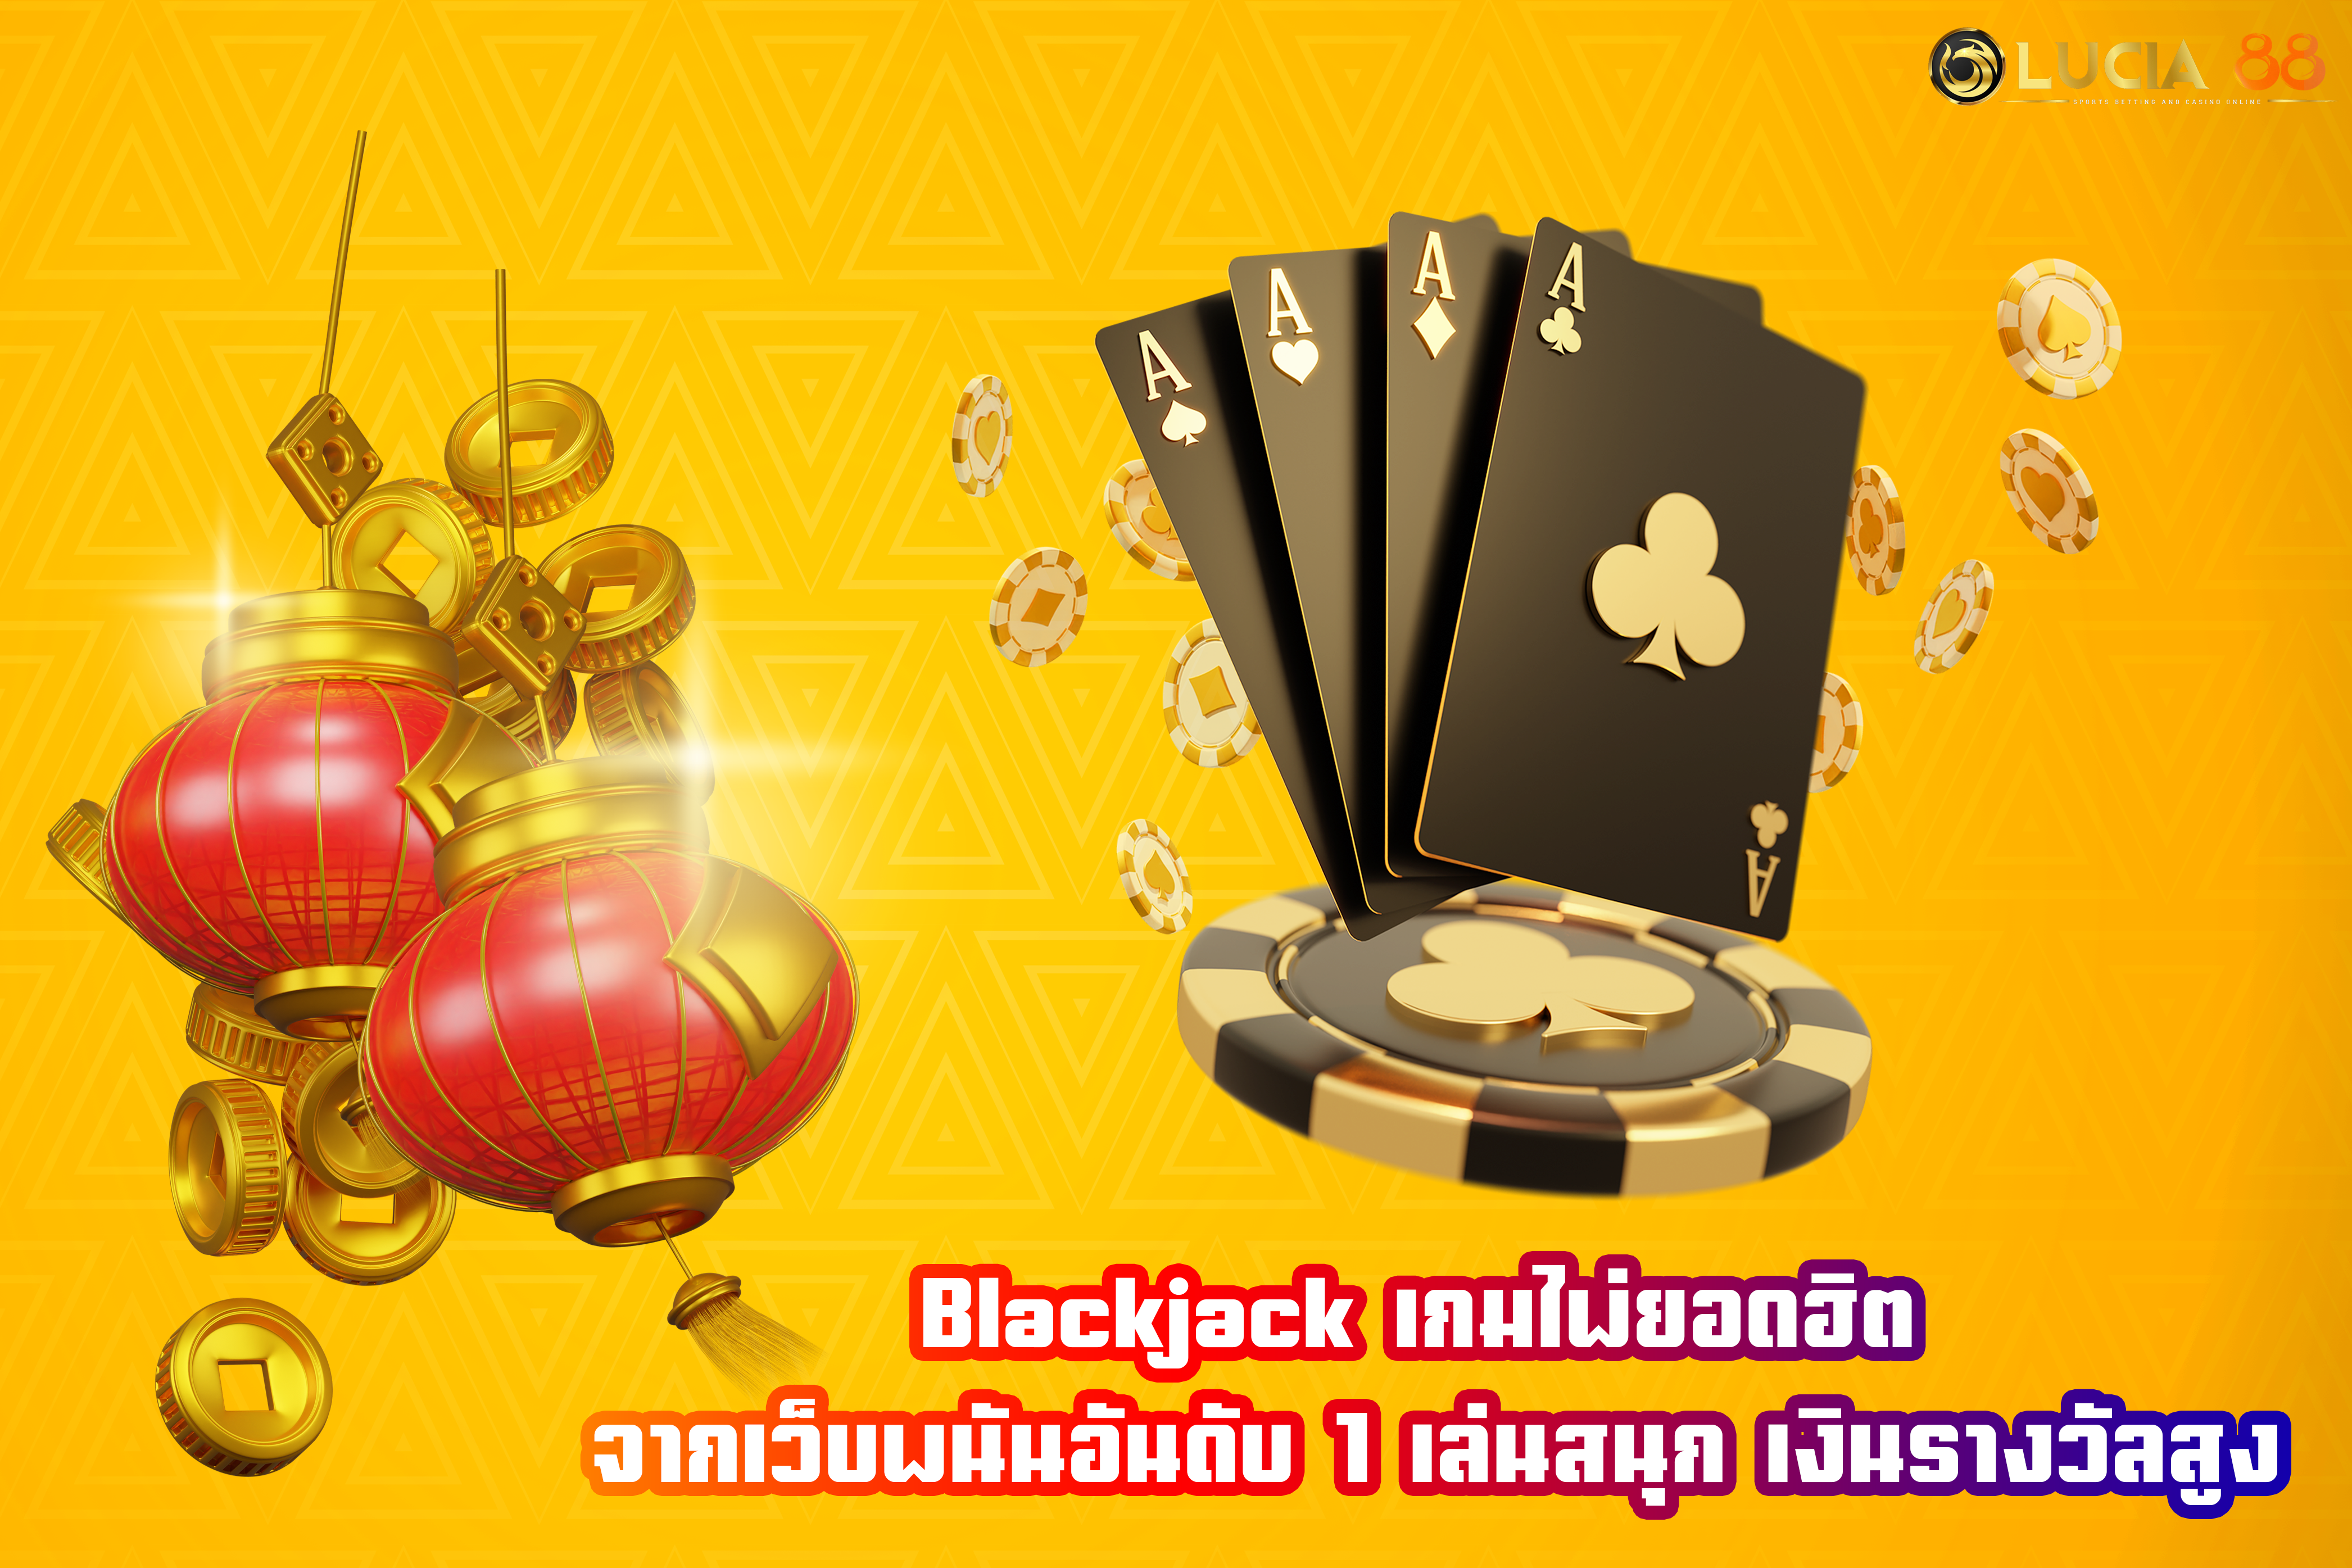 Blackjack เกมไพ่ยอดฮิต จากเว็บพนันอันดับ 1 เล่นสนุก เงินรางวัลสูง